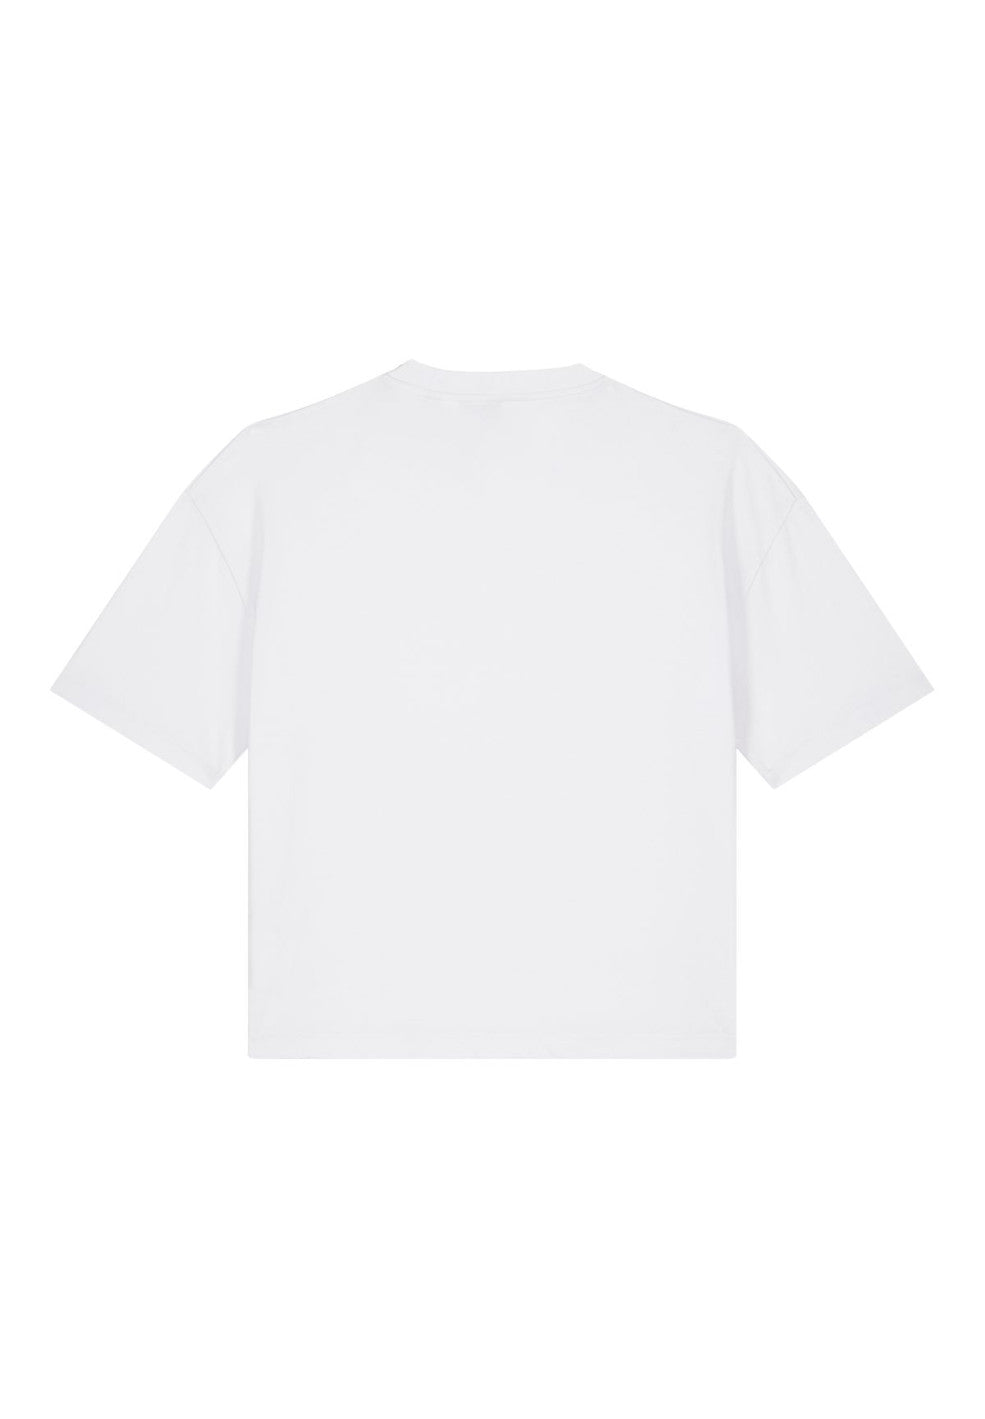 t-shirt nova white